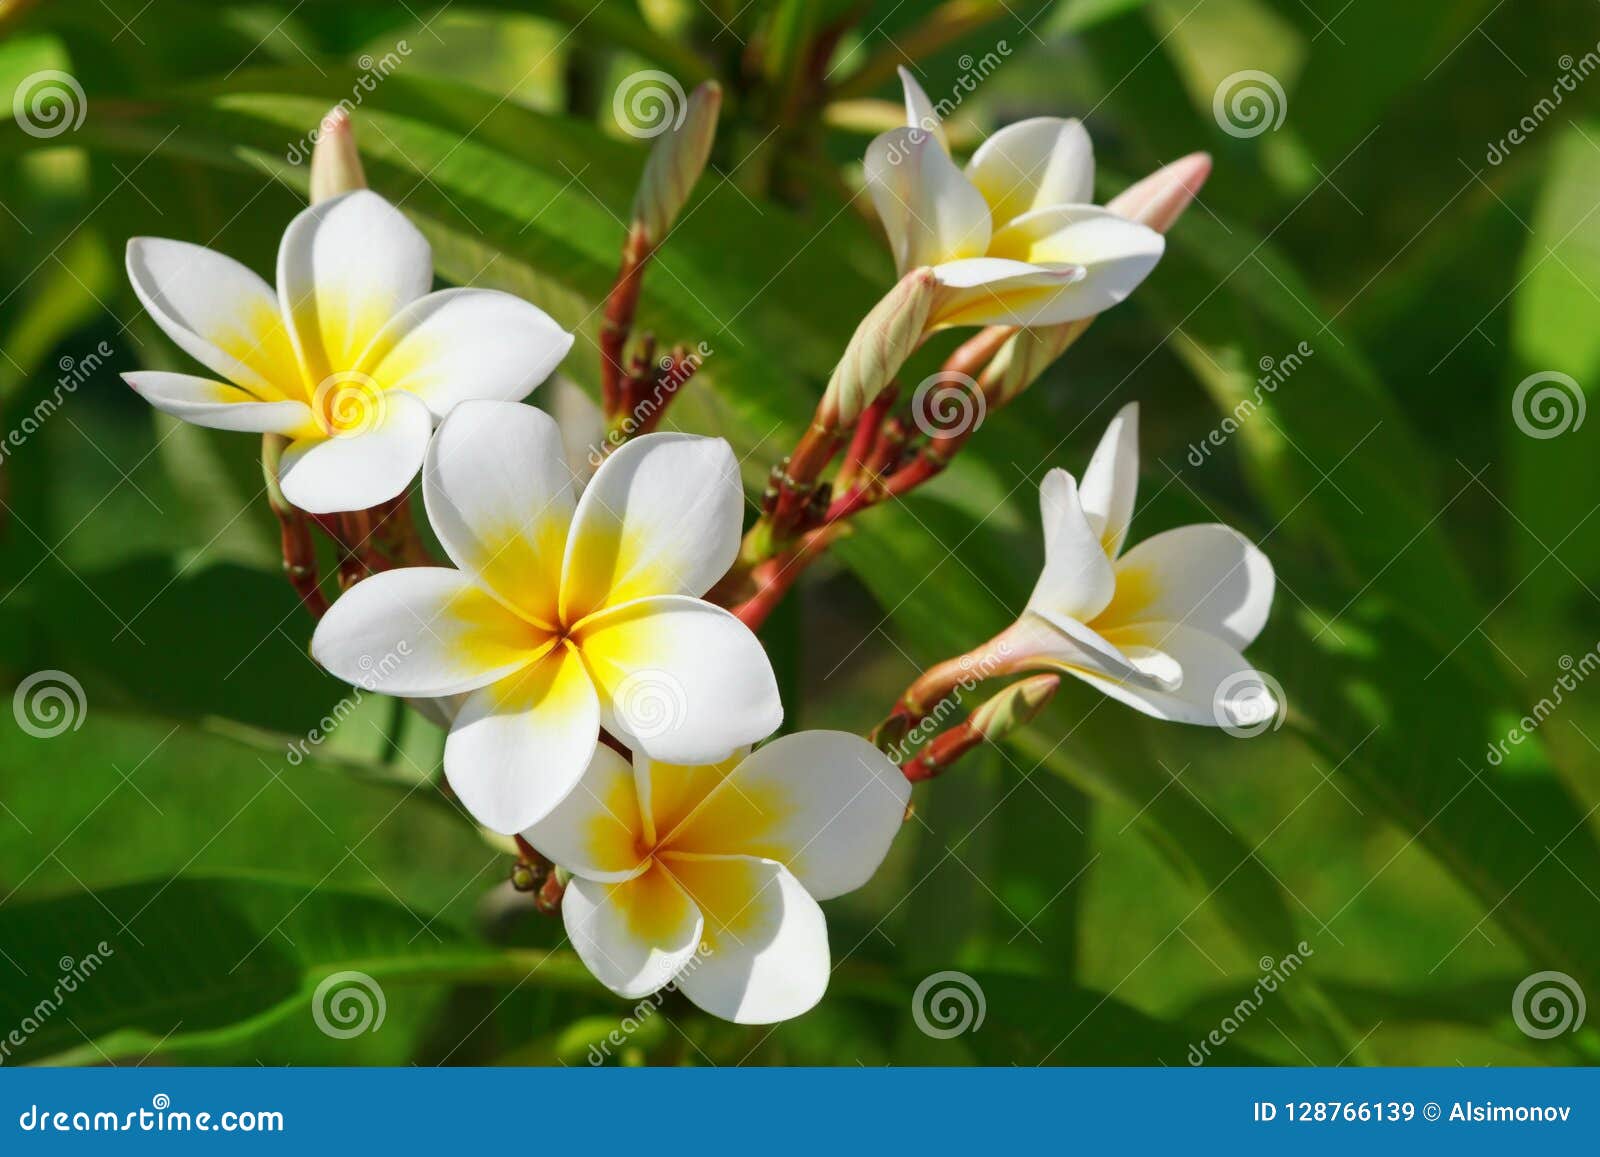 Beautiful, White Flowers of Plumeria Latin Name - Plumeria in ...